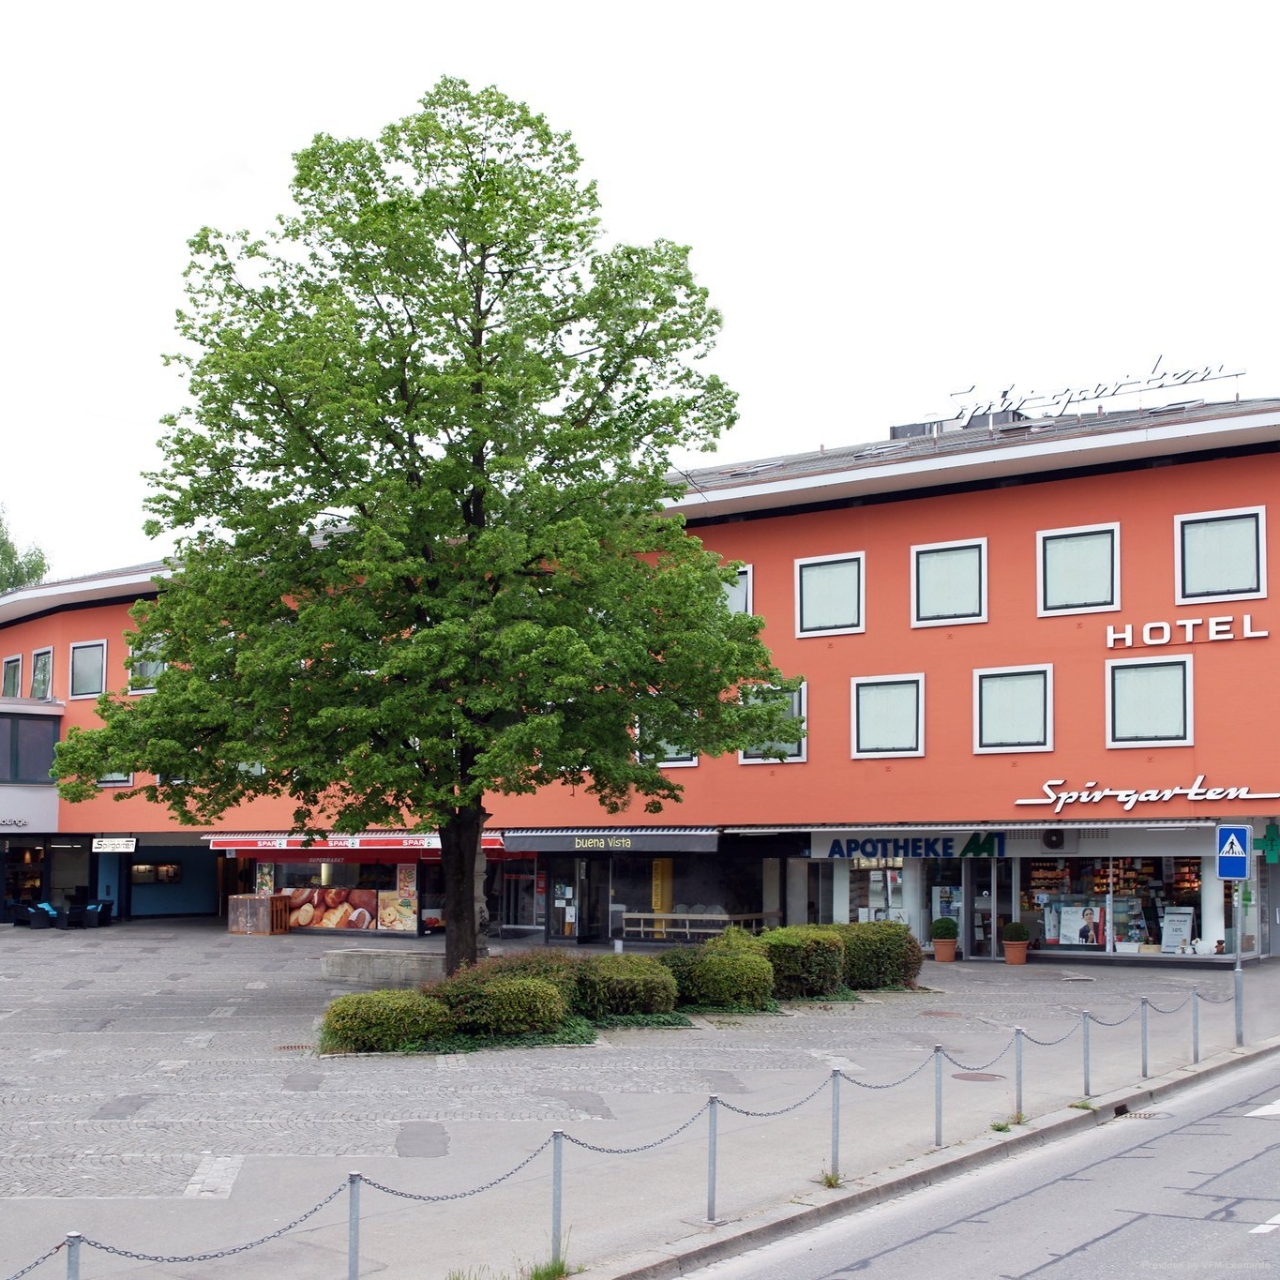 Hotel Best Western Spirgarten Zurich at HRS with free services